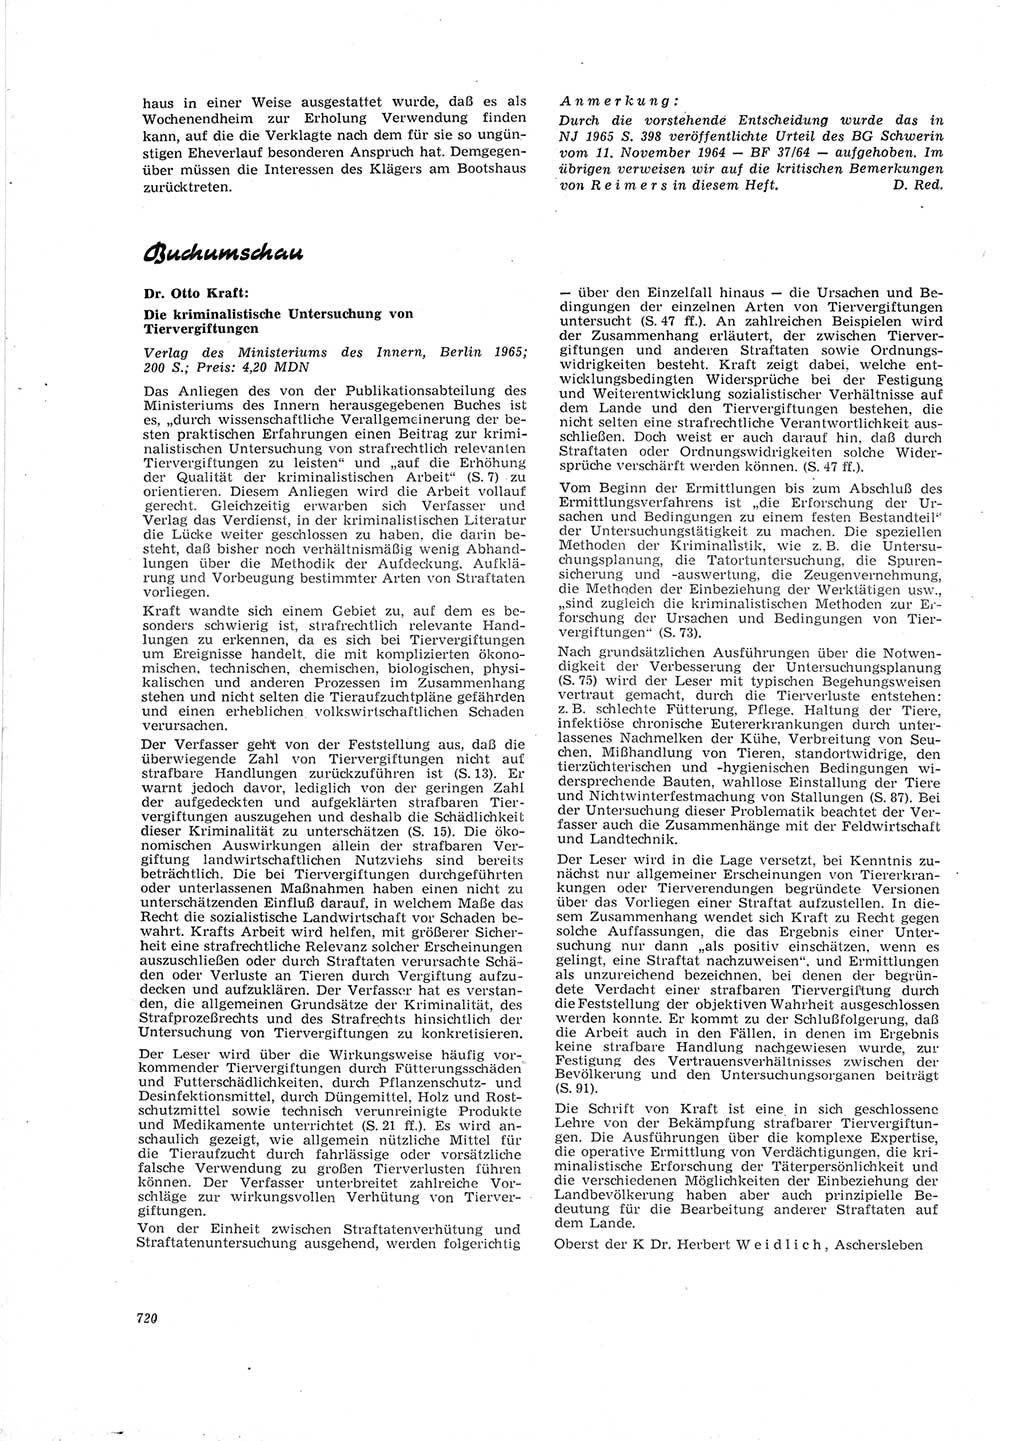 Neue Justiz (NJ), Zeitschrift für Recht und Rechtswissenschaft [Deutsche Demokratische Republik (DDR)], 19. Jahrgang 1965, Seite 720 (NJ DDR 1965, S. 720)